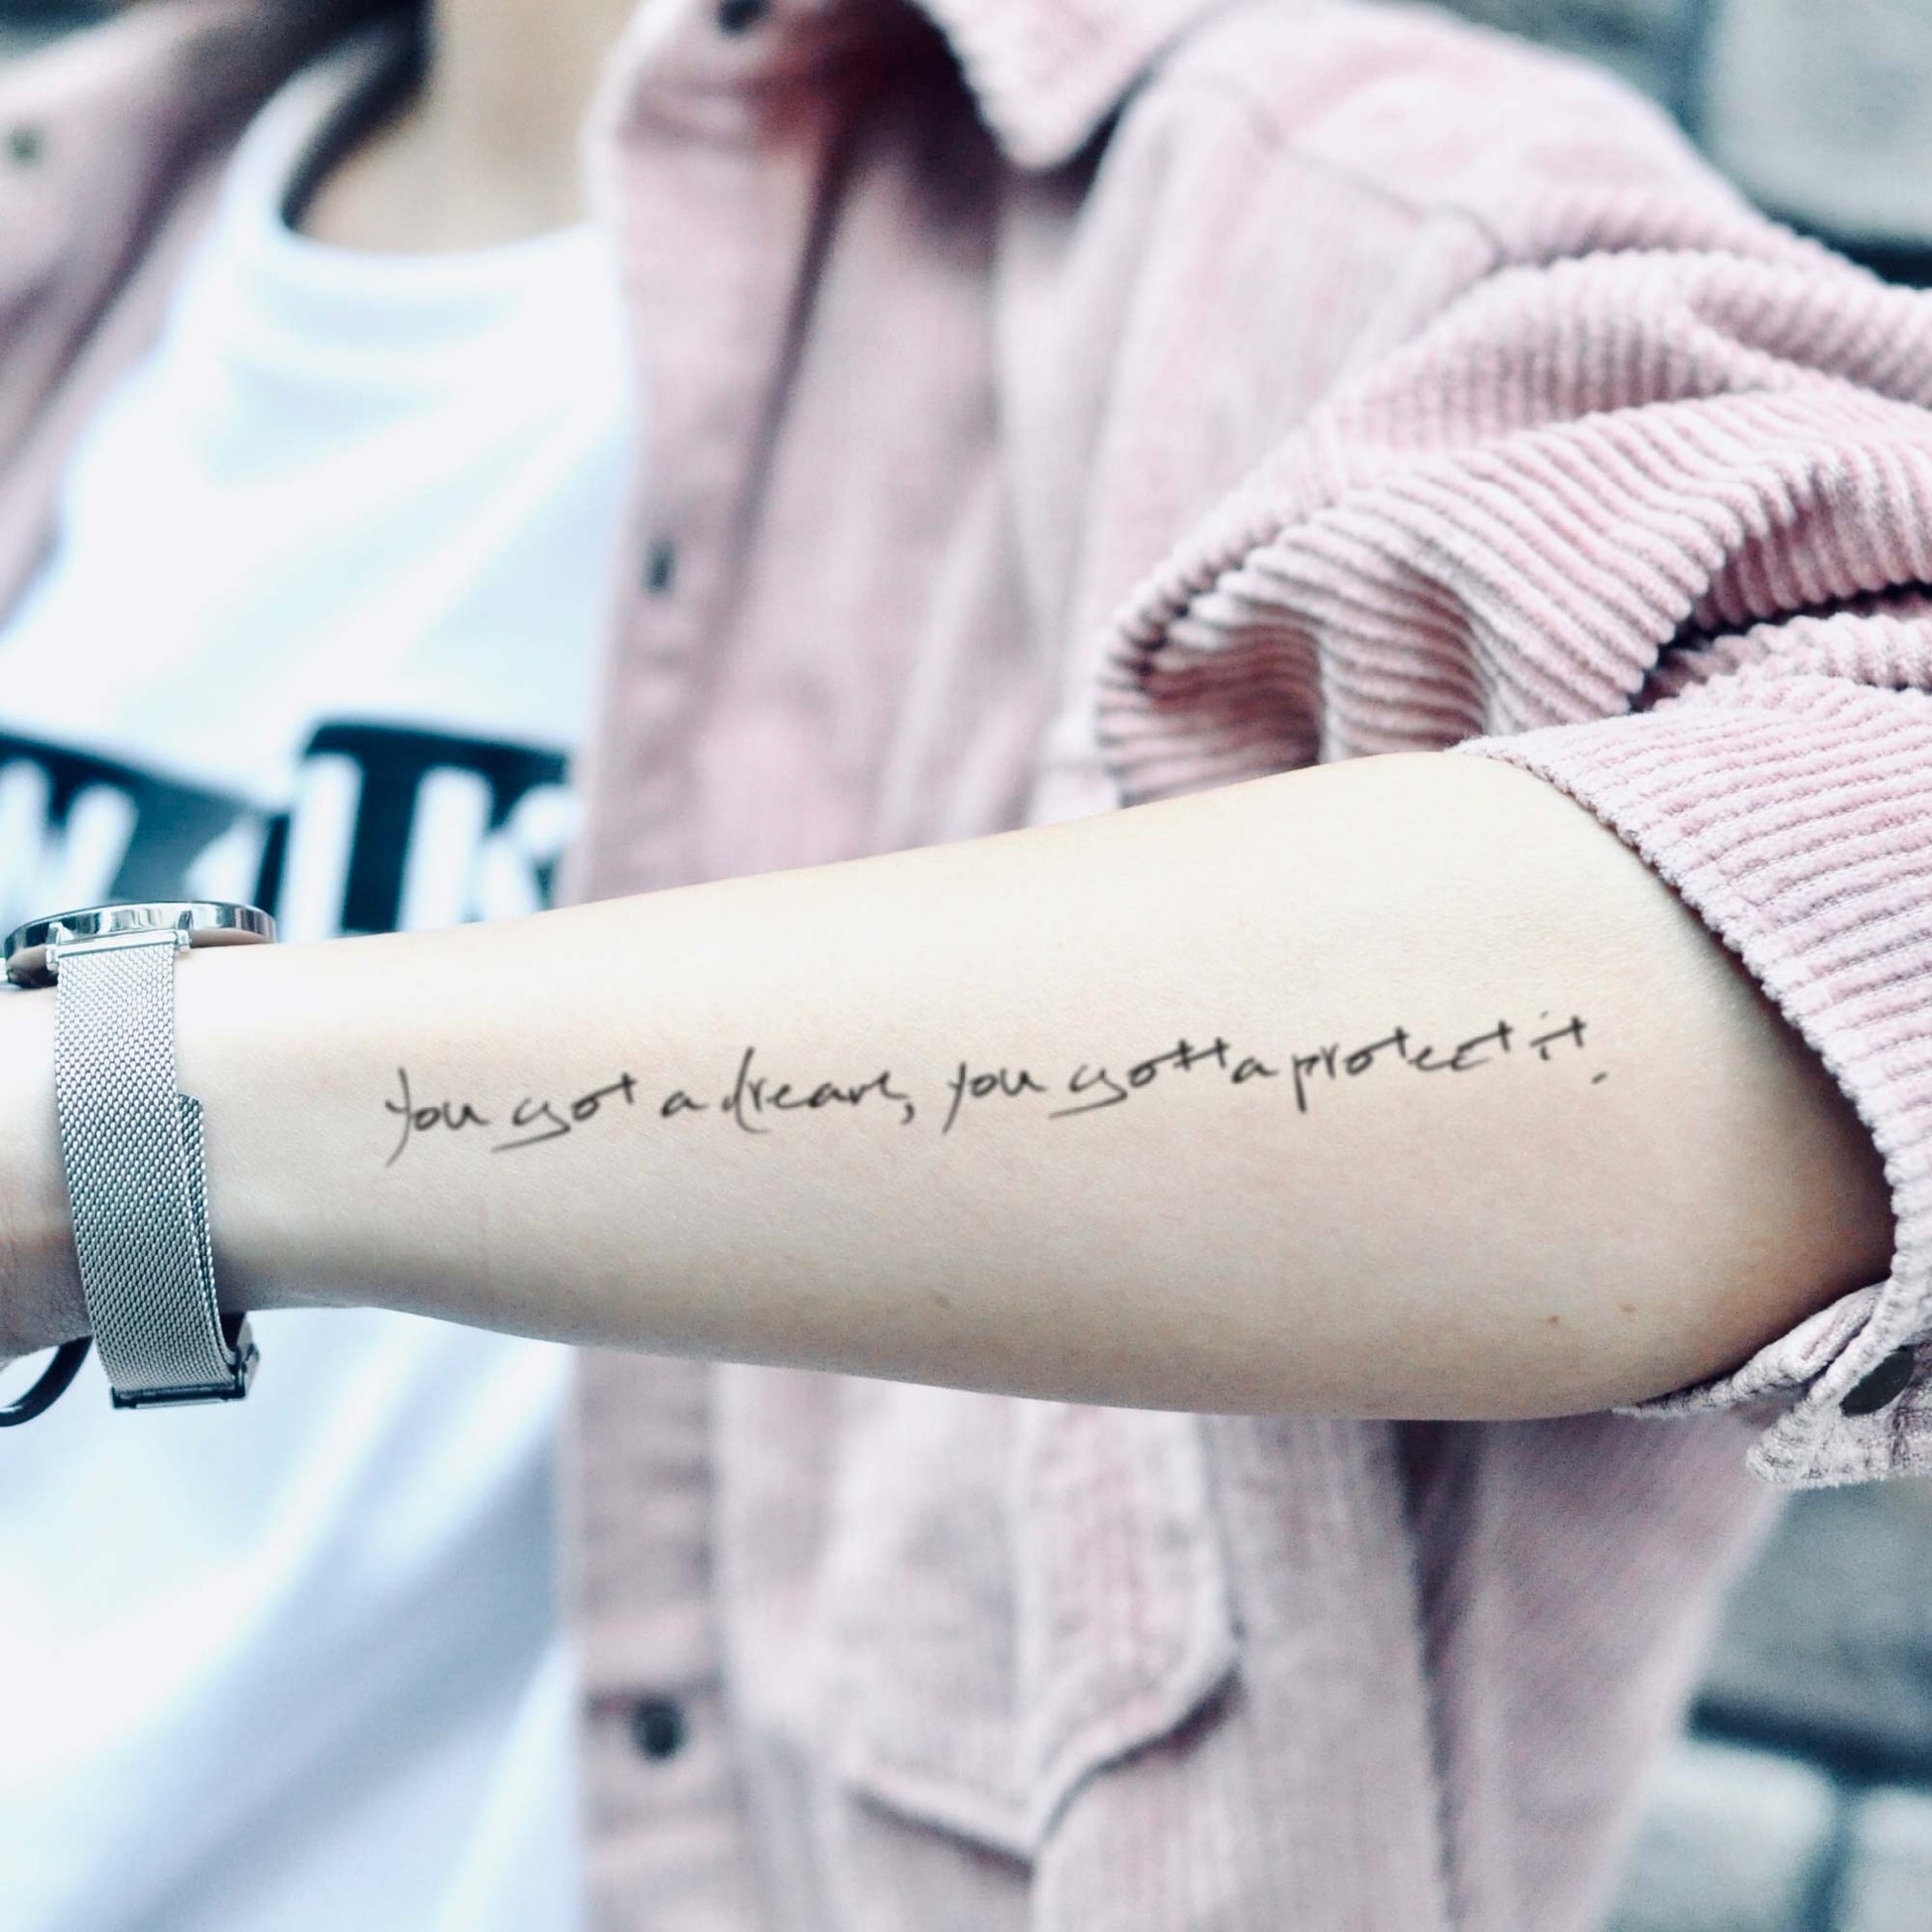 姜濤 Mirror Keung To Show 紋身貼紙 刺青 viu viuTV quote You got a dream you gotta protect it lettering fake temporary tattoo sticker design idea on arm forearm